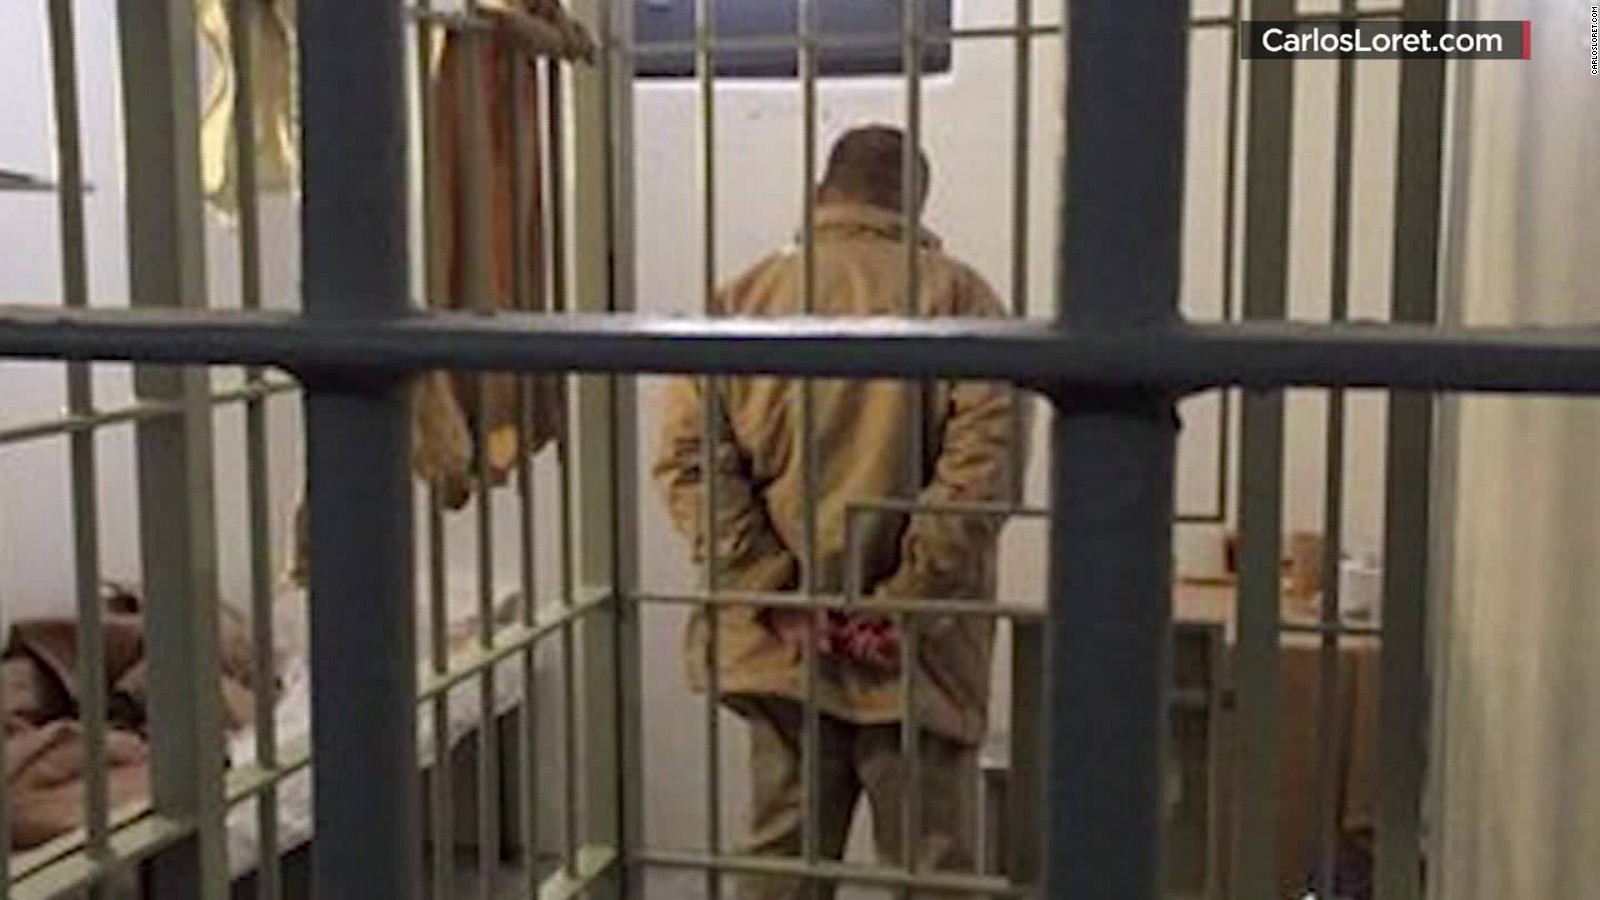 Video shows moment of 'El Chapo's' escape from prison CNN